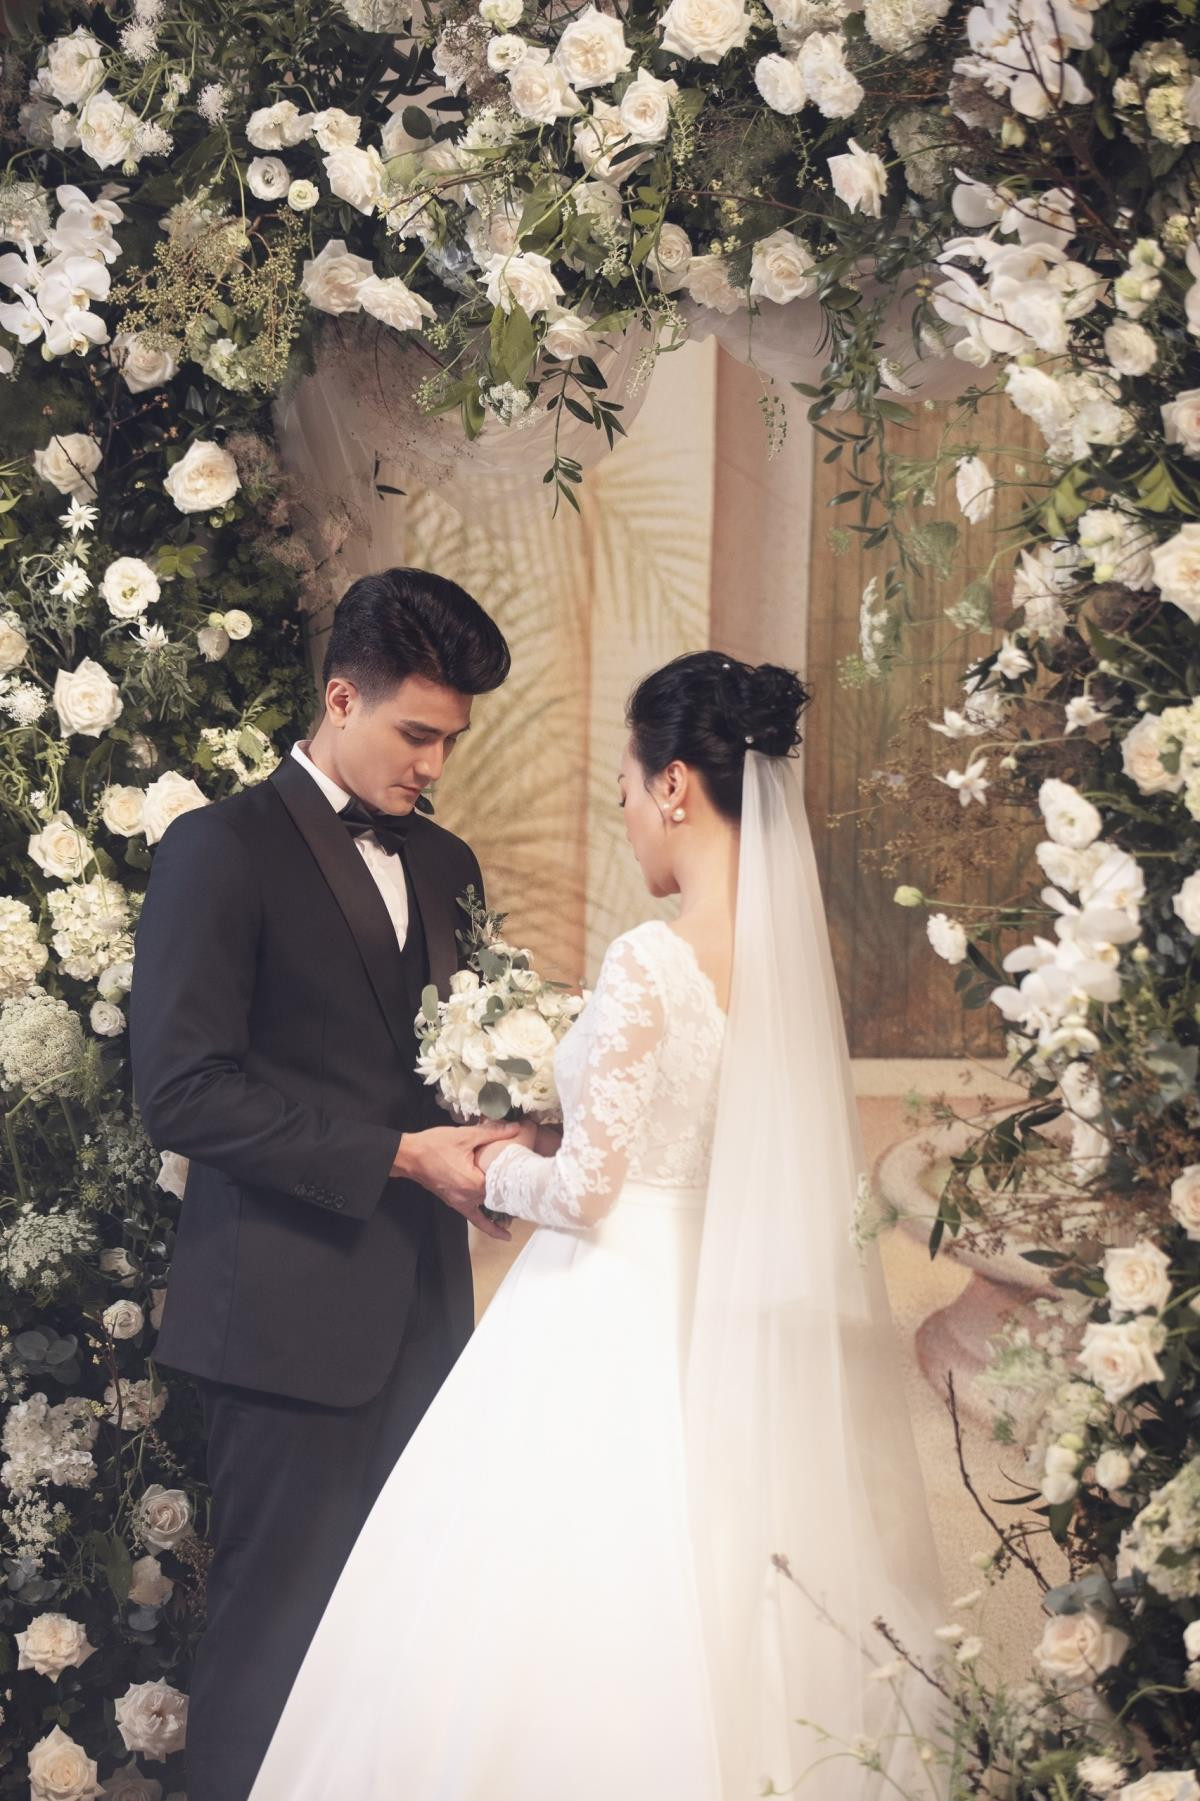 Ảnh cưới của Phương Oanh và người mẫu Vĩnh Thuỵ khiến fan bất ngờ - 4